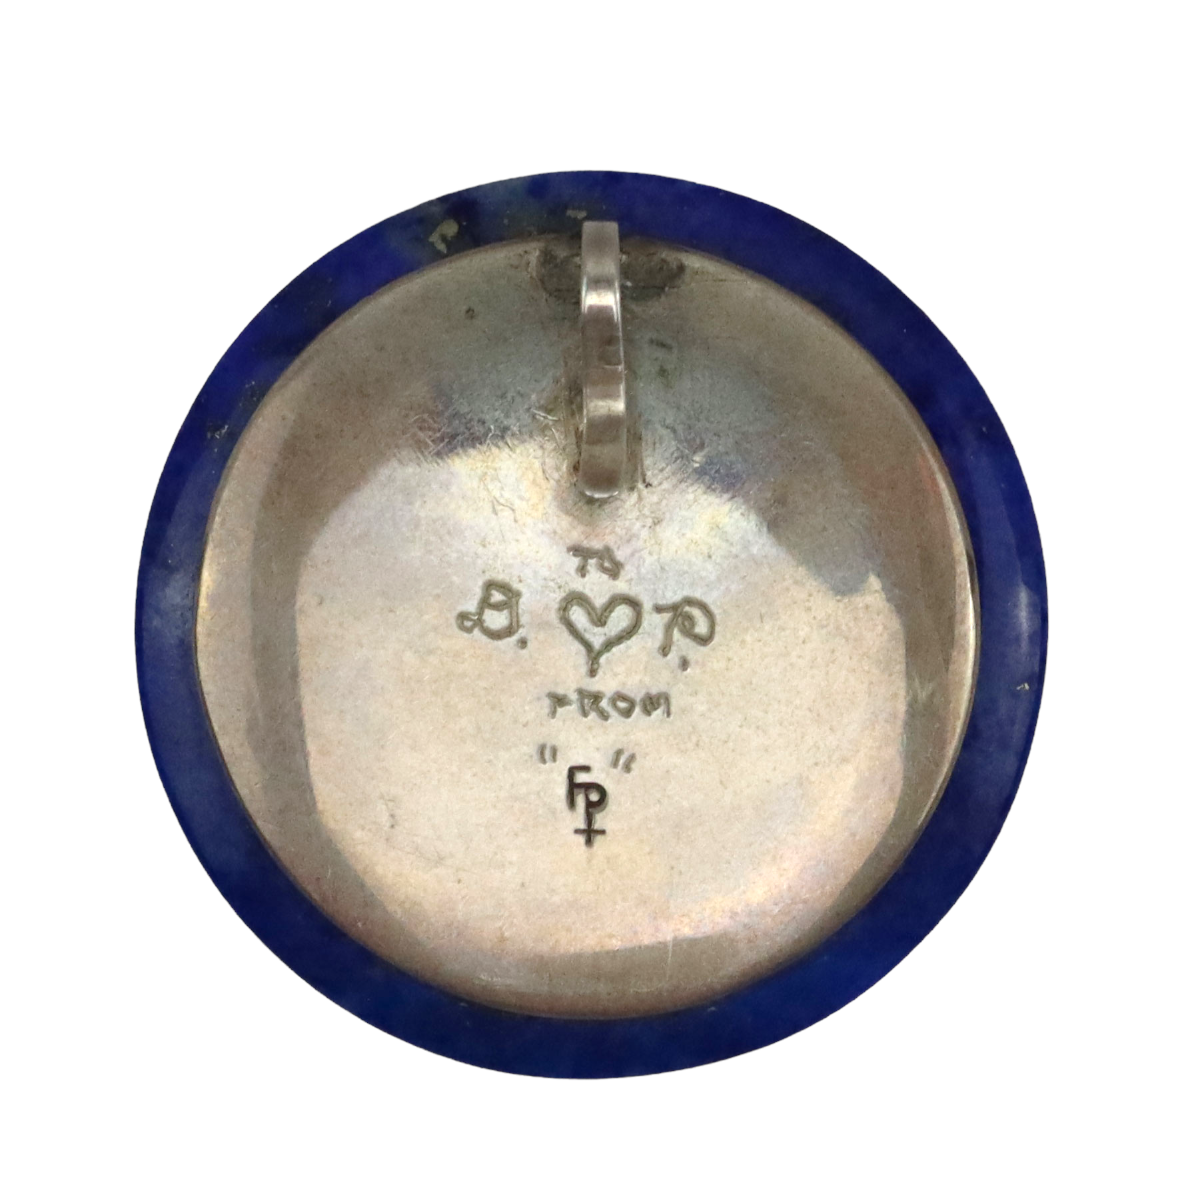 Frank Patania Jr. - Moonstone, Lapis Lazuli, 14K Gold, and Silver Pendant, 1.75" diameter (J91699-1222-013) 1